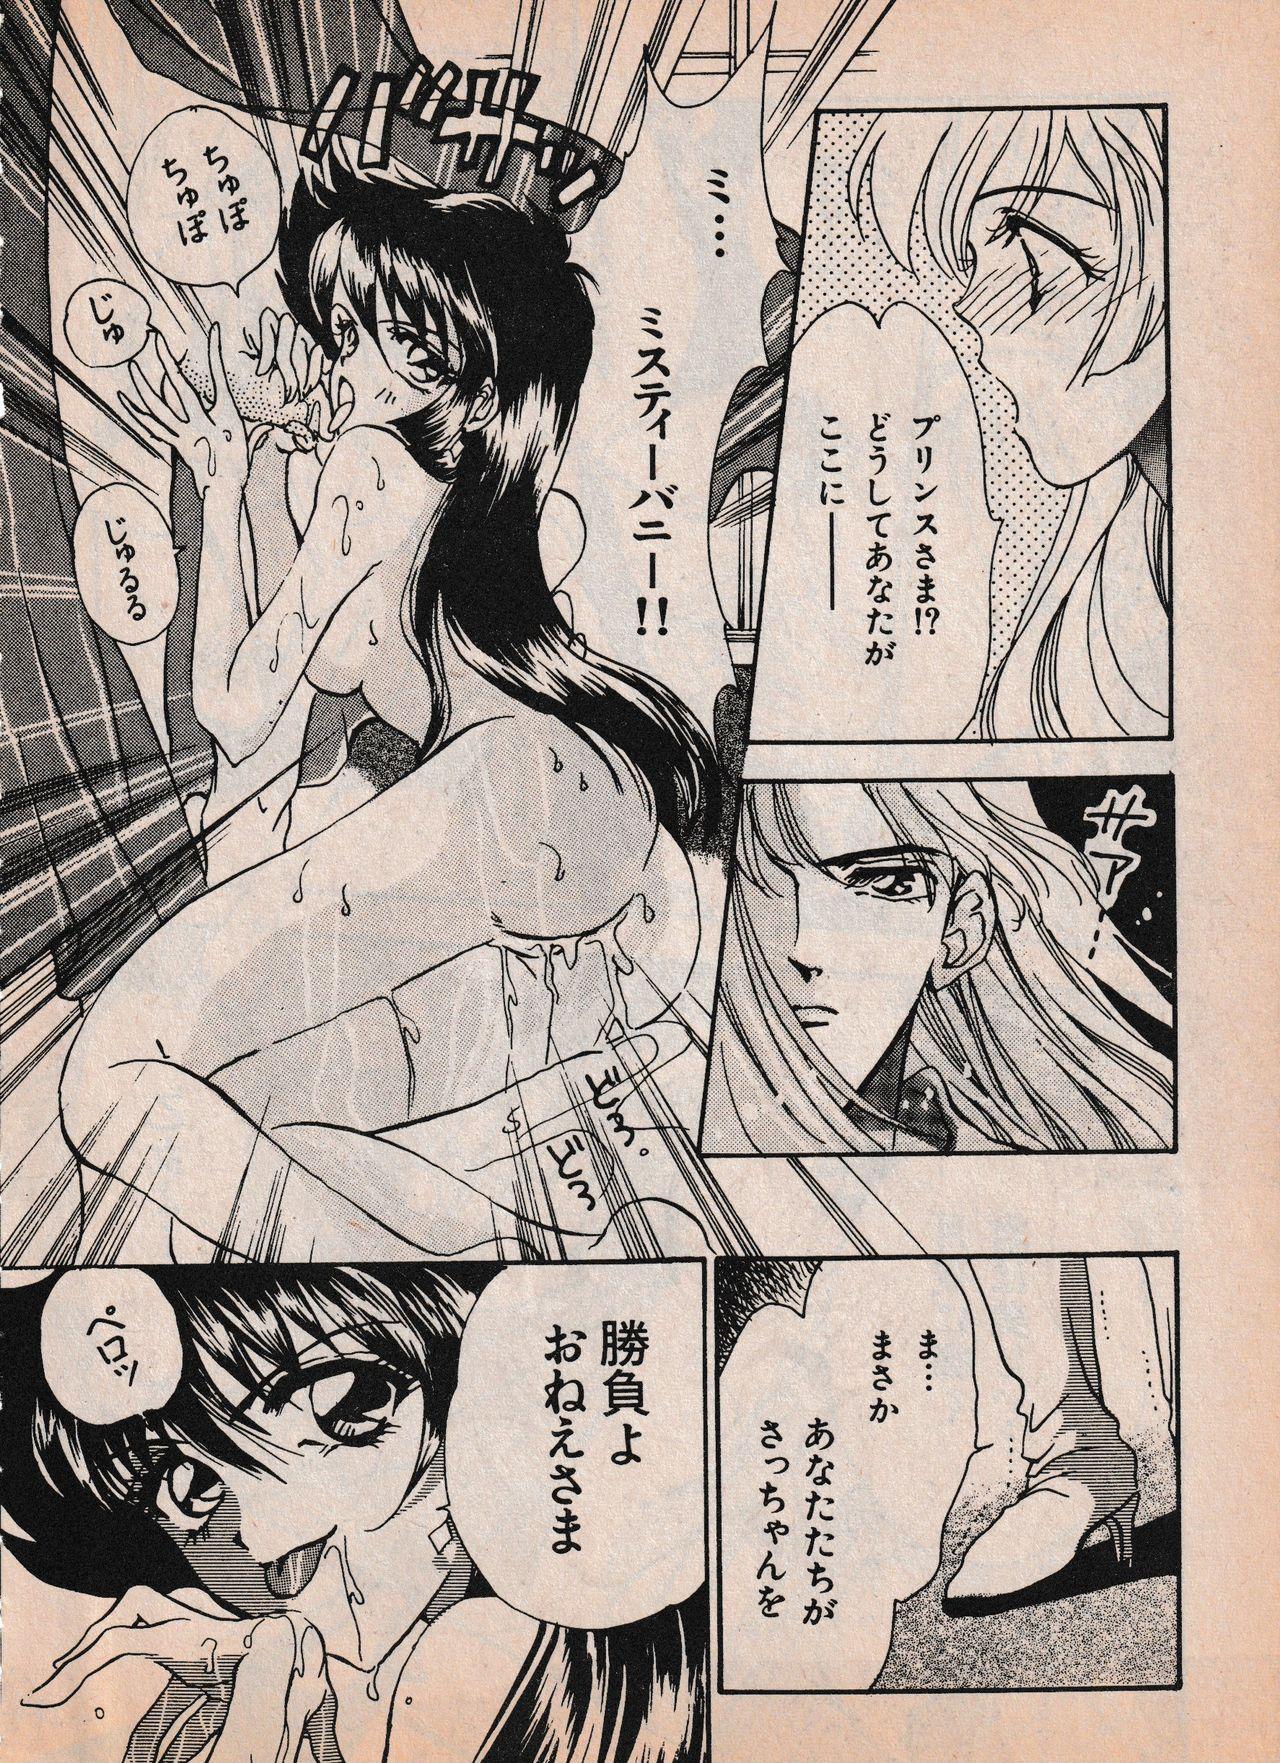 Sailor X vol. 4 - Sailor X vs. Cunty Horny! 98